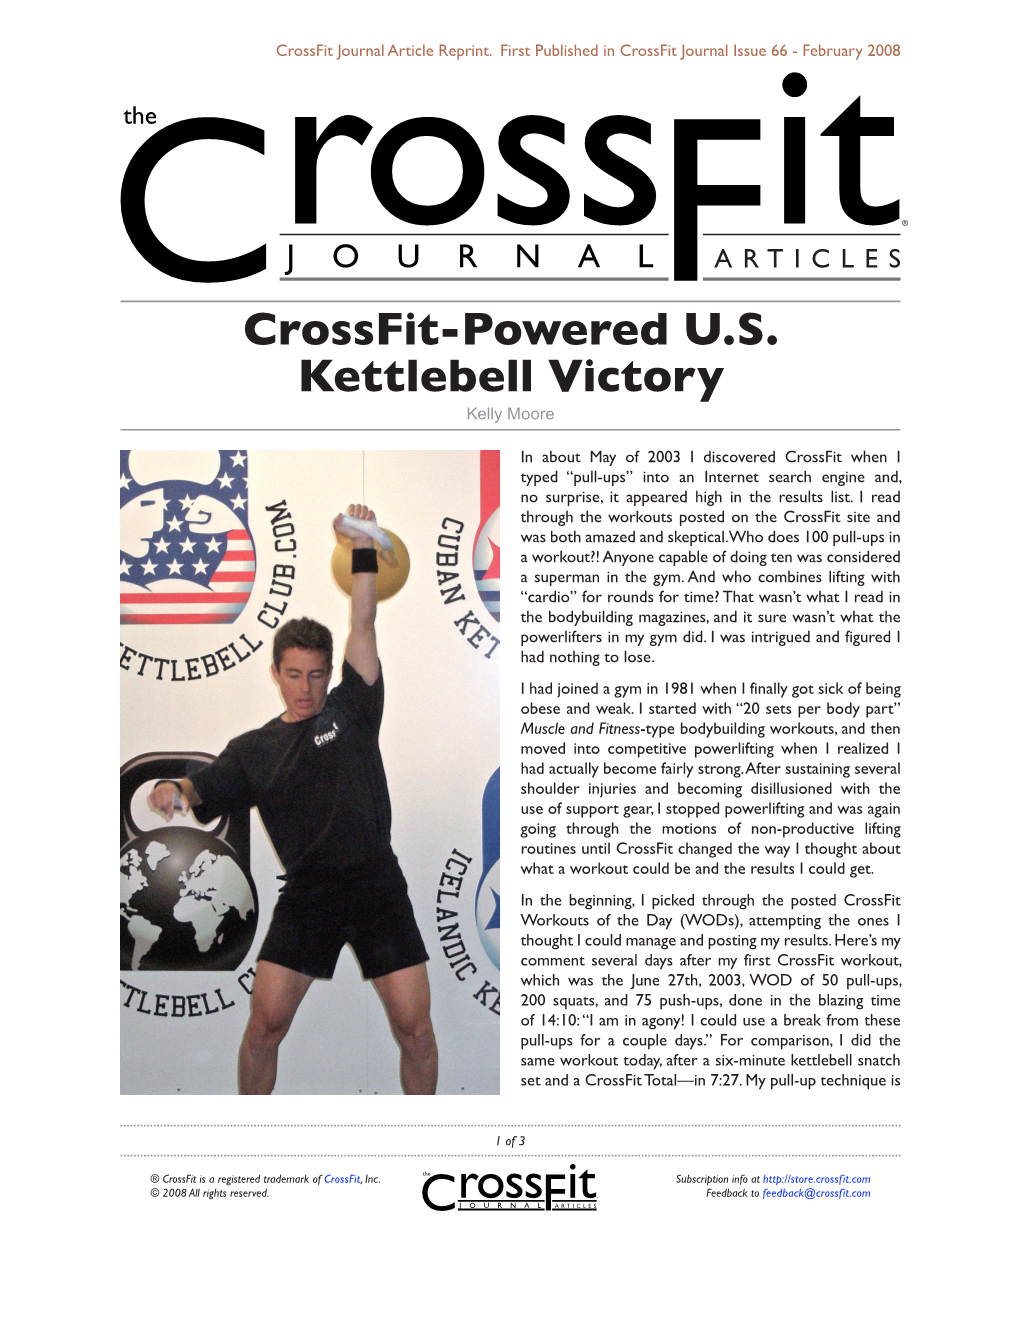 Crossfit-Powered U.S. Kettlebell Victory Kelly Moore